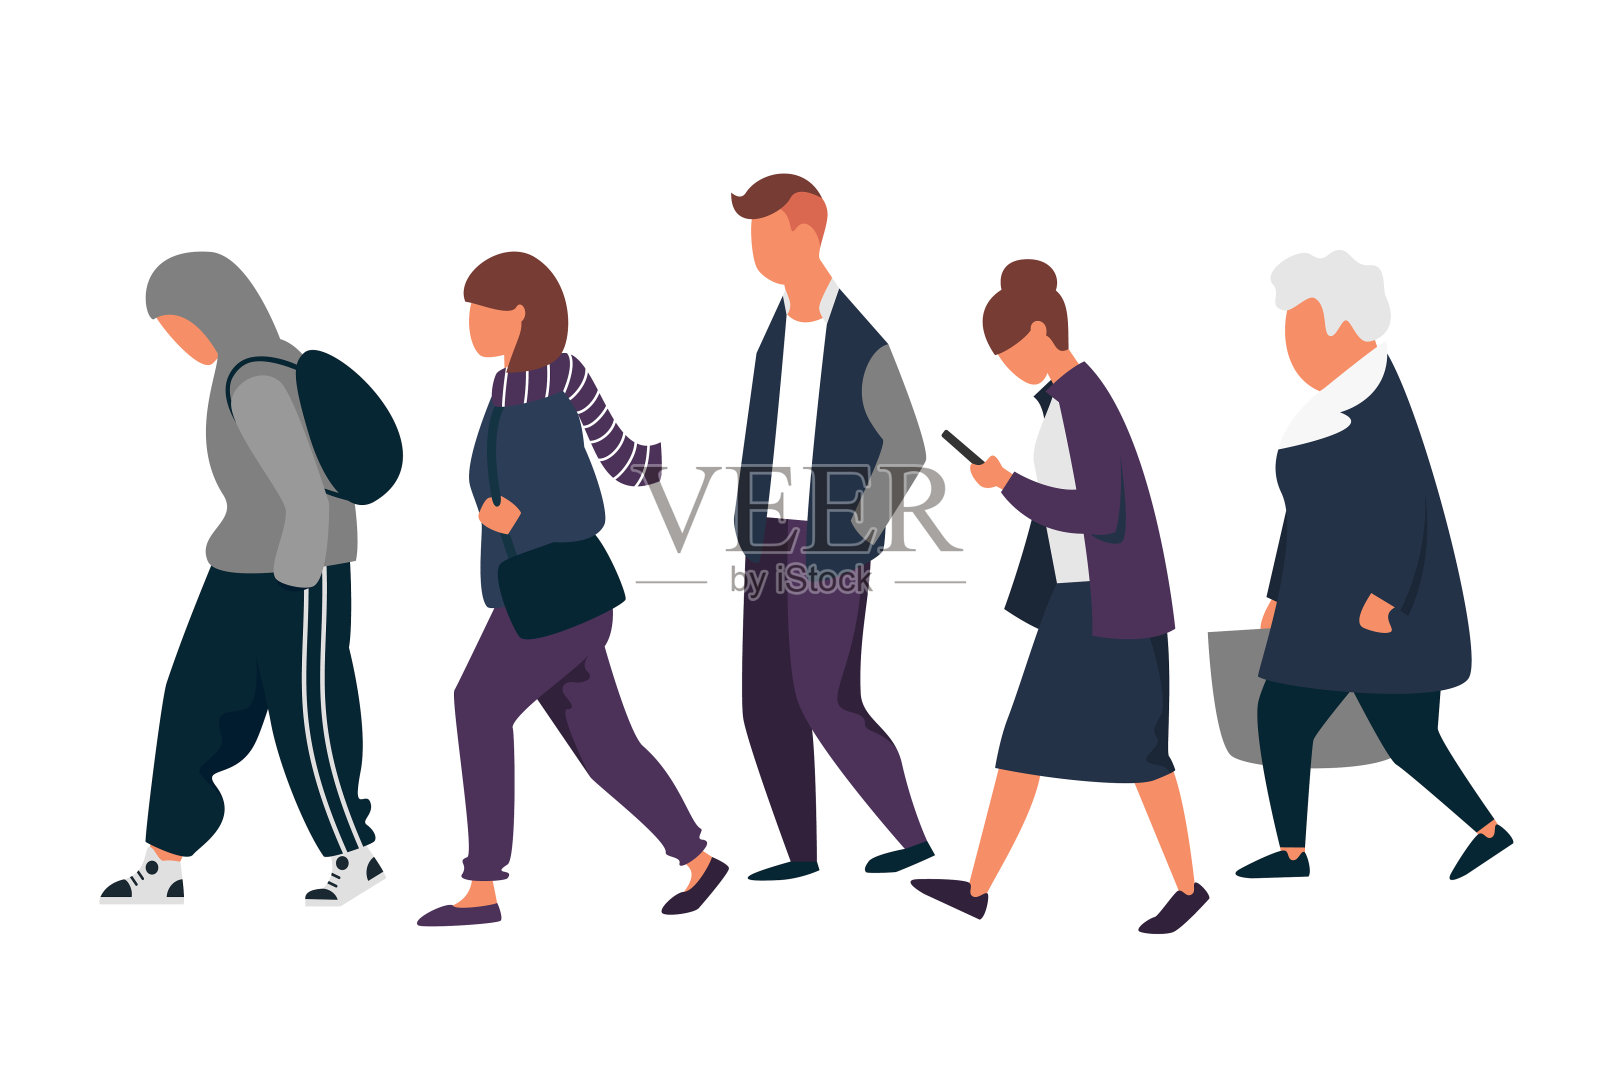 男人和女人的性格。一群穿着秋衣的人在散步。矢量图插画图片素材